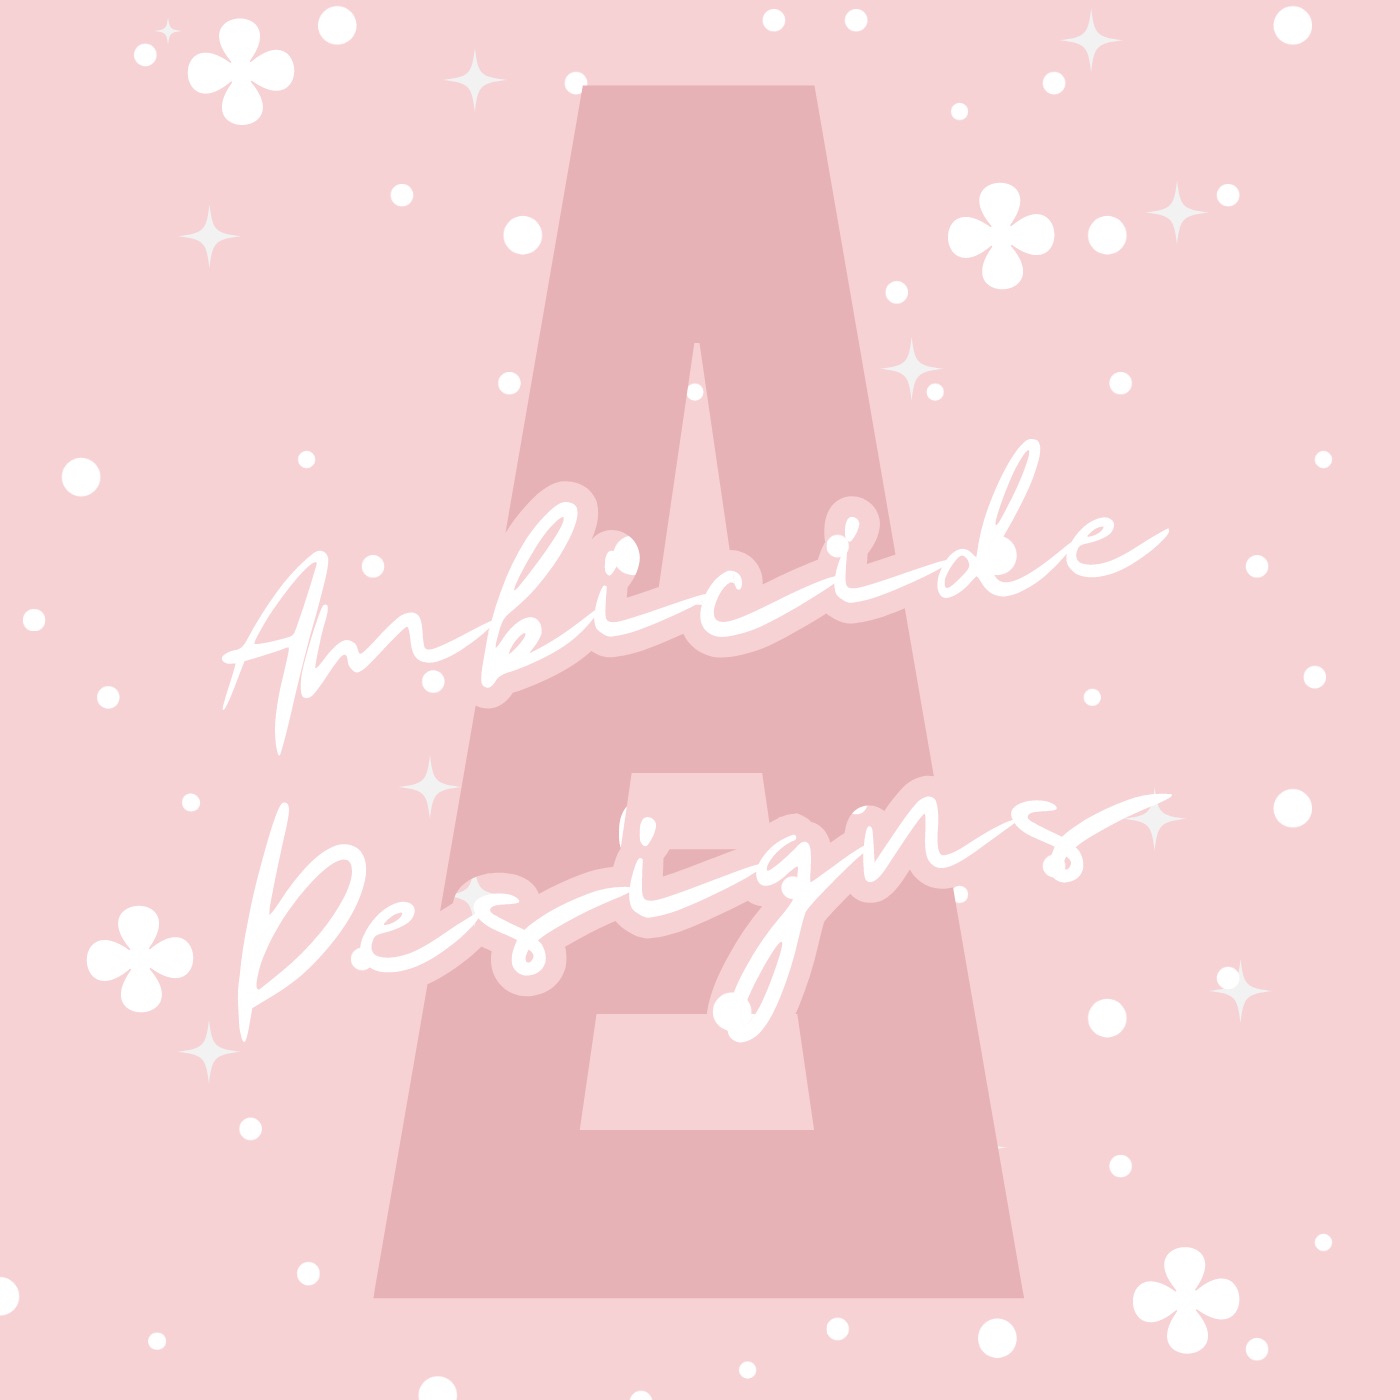 Ambicide Designs logo